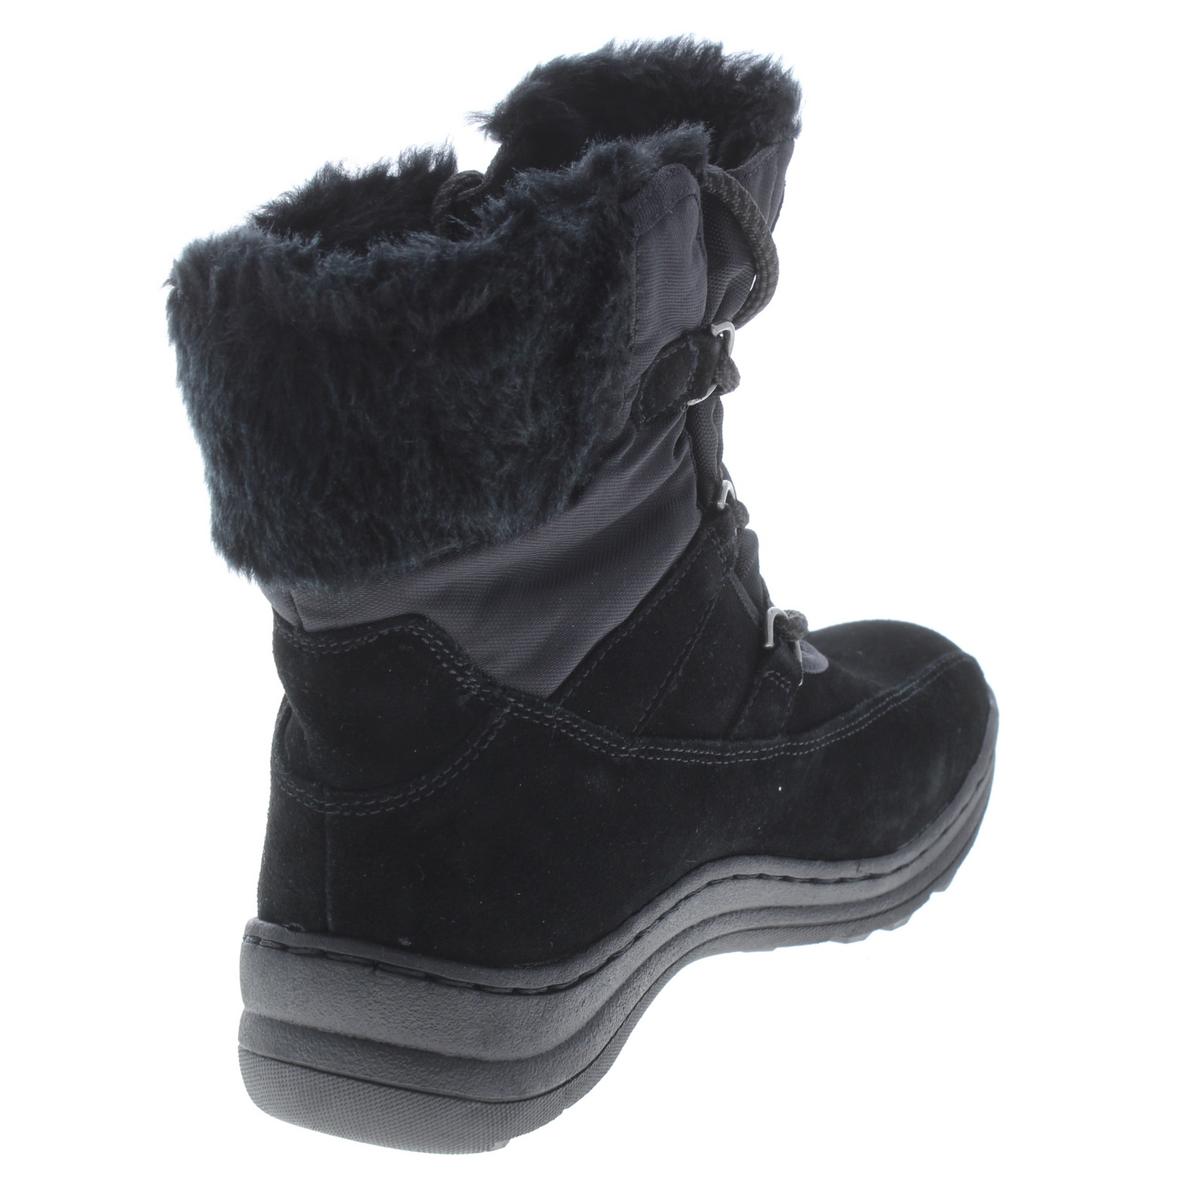 baretraps aero winter boots